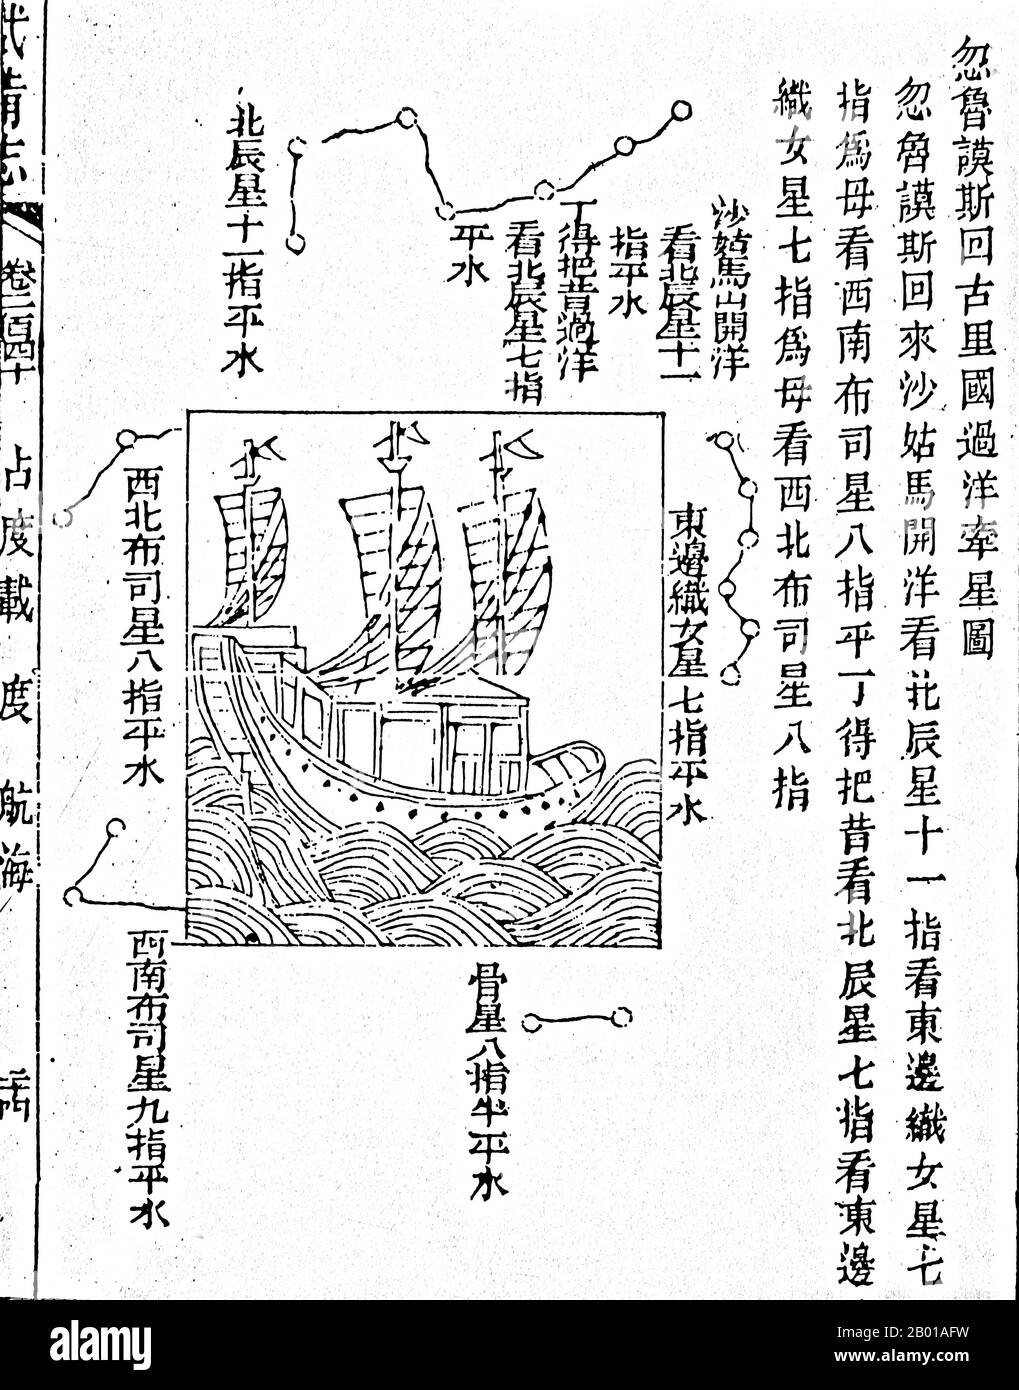 Cina: Uno di una serie di diagrammi stellari che mostrano le stelle guida in rotta da Hormuz a Calicut. Dalla mappa di Mao Kun nel trattato militare della dinastia Ming 'Wubei Zhi', raffigurante le spedizioni marittime di Zheng verso l'Oceano Indiano (1405-1433), 1628. Tra il 1405 e il 1433, il governo Ming sponsorizzò una serie di sette spedizioni navali. L'imperatore Yongle li ha progettati per stabilire una presenza cinese, imporre il controllo imperiale sul commercio, impressionare i popoli stranieri nel bacino dell'Oceano Indiano ed estendere il sistema tributario dell'impero. Zheng fu posto come ammiraglio nel controllo dell'enorme flotta. Foto Stock